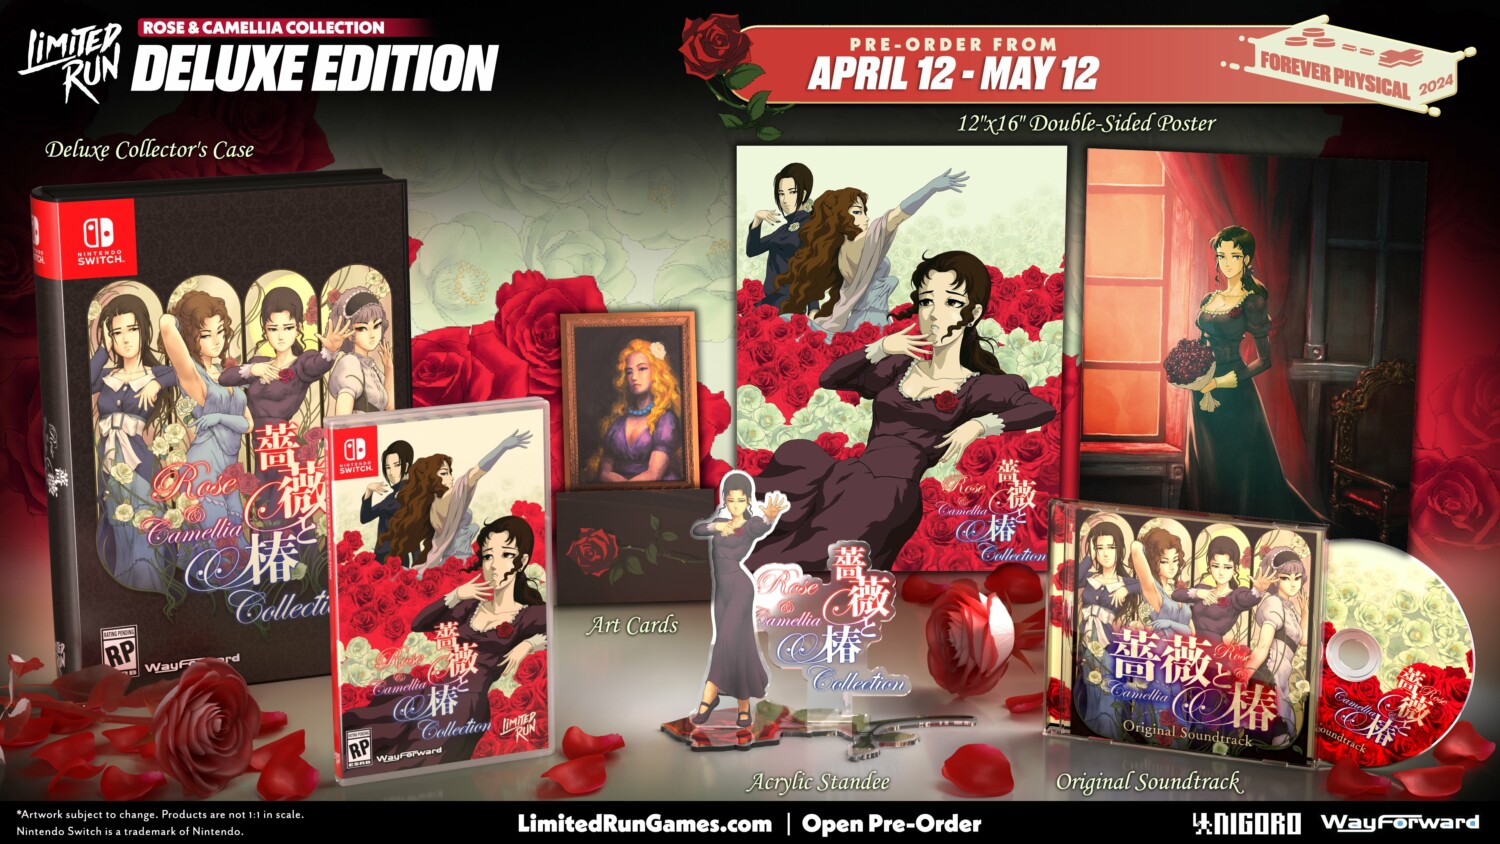 Rose & Camellia Collection llegará a Nintendo Switch el 16 de abril 5